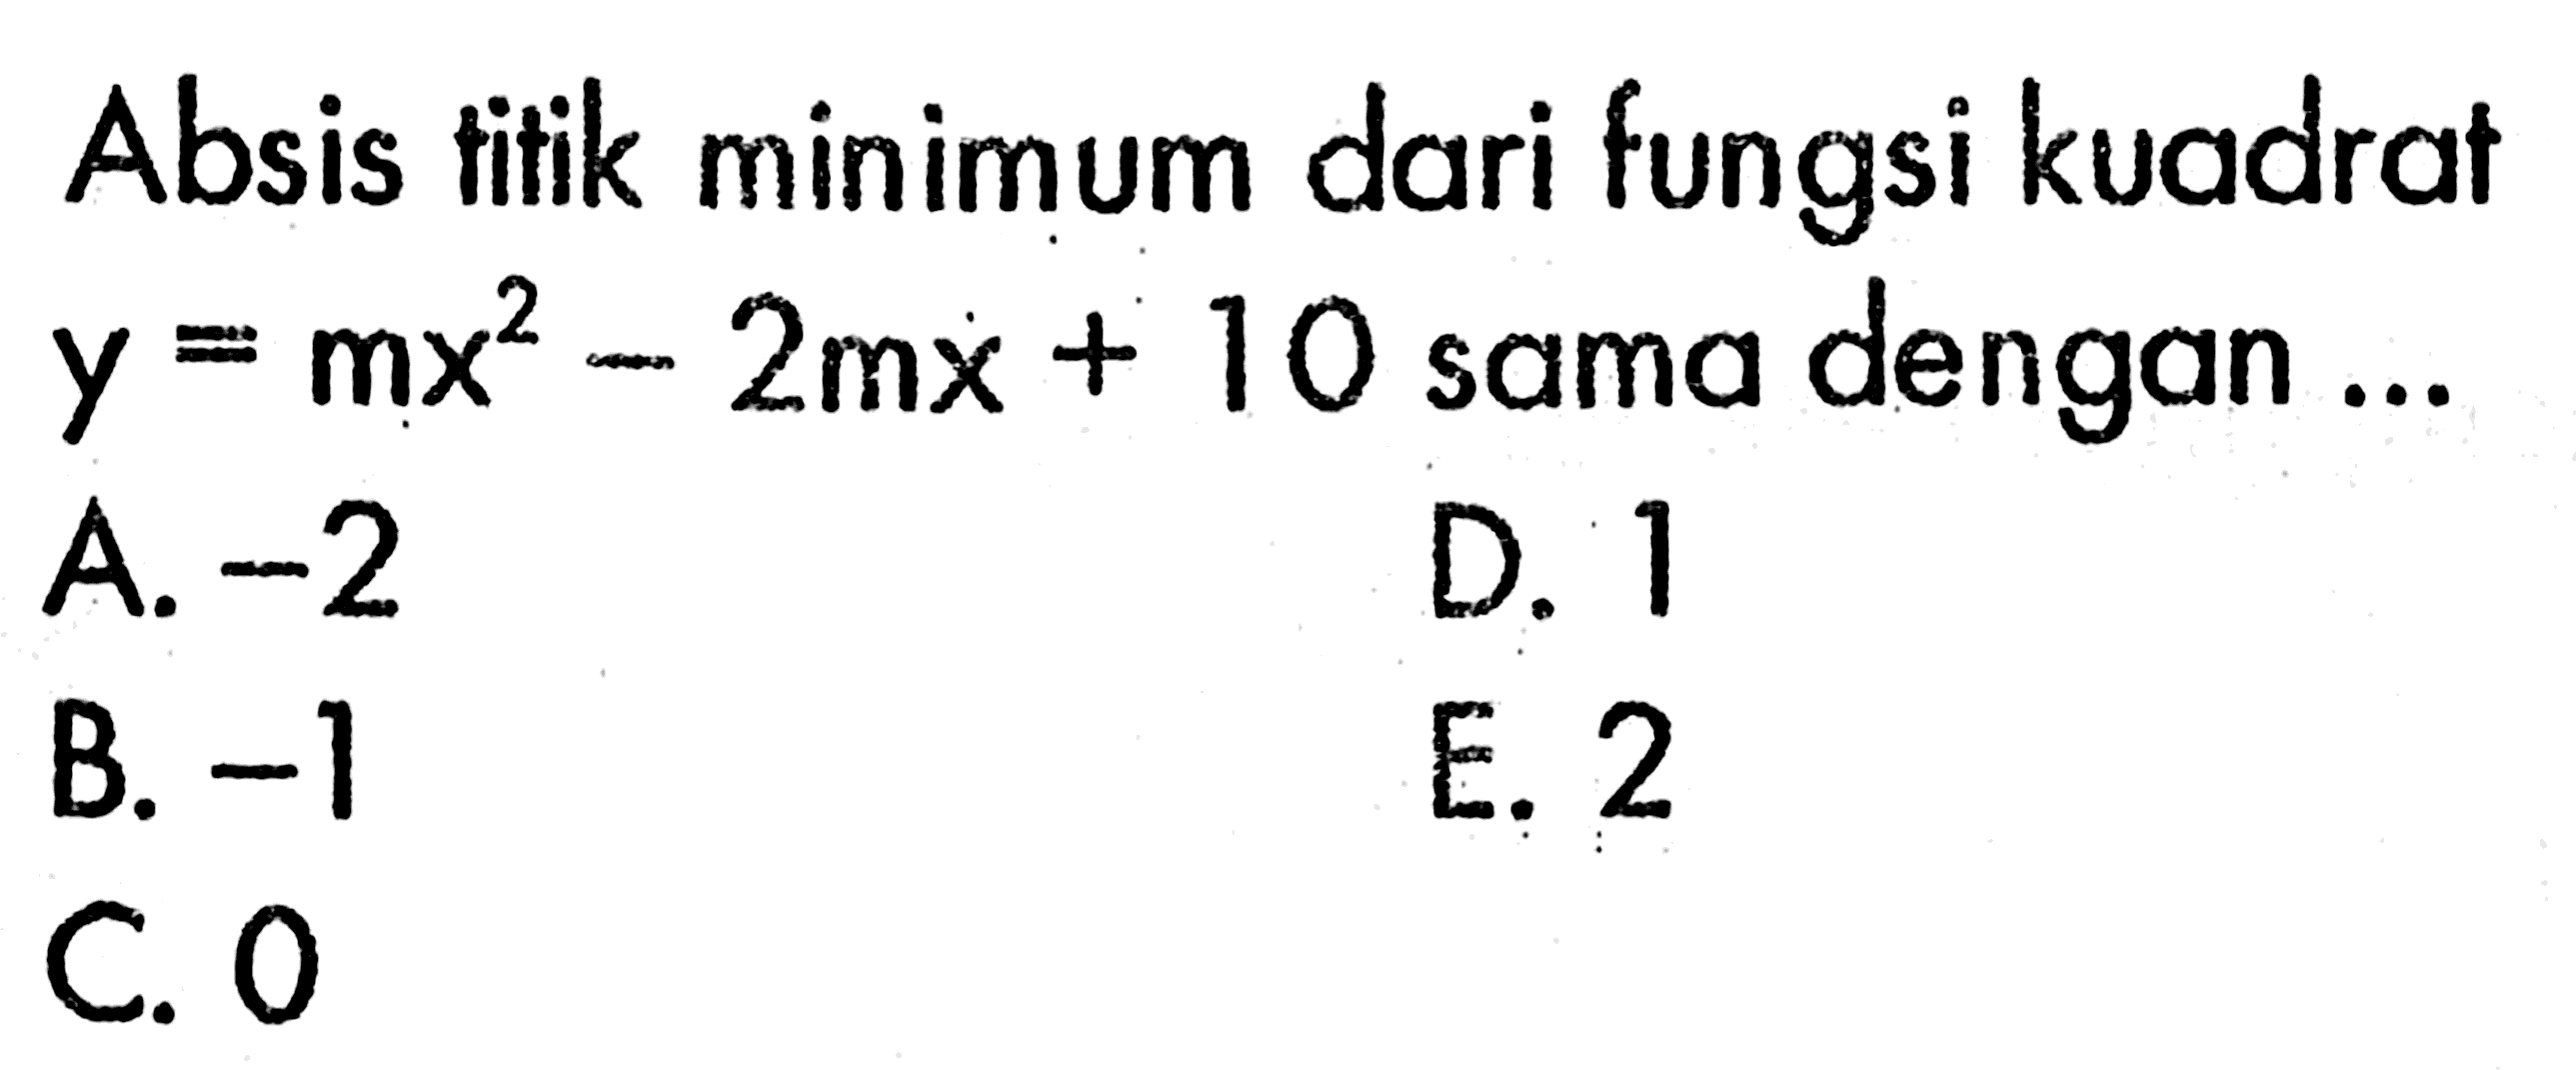 Absis titik minimum dari fungsi kuadrat y=mx^2-2 mx+10 sama dengan ...